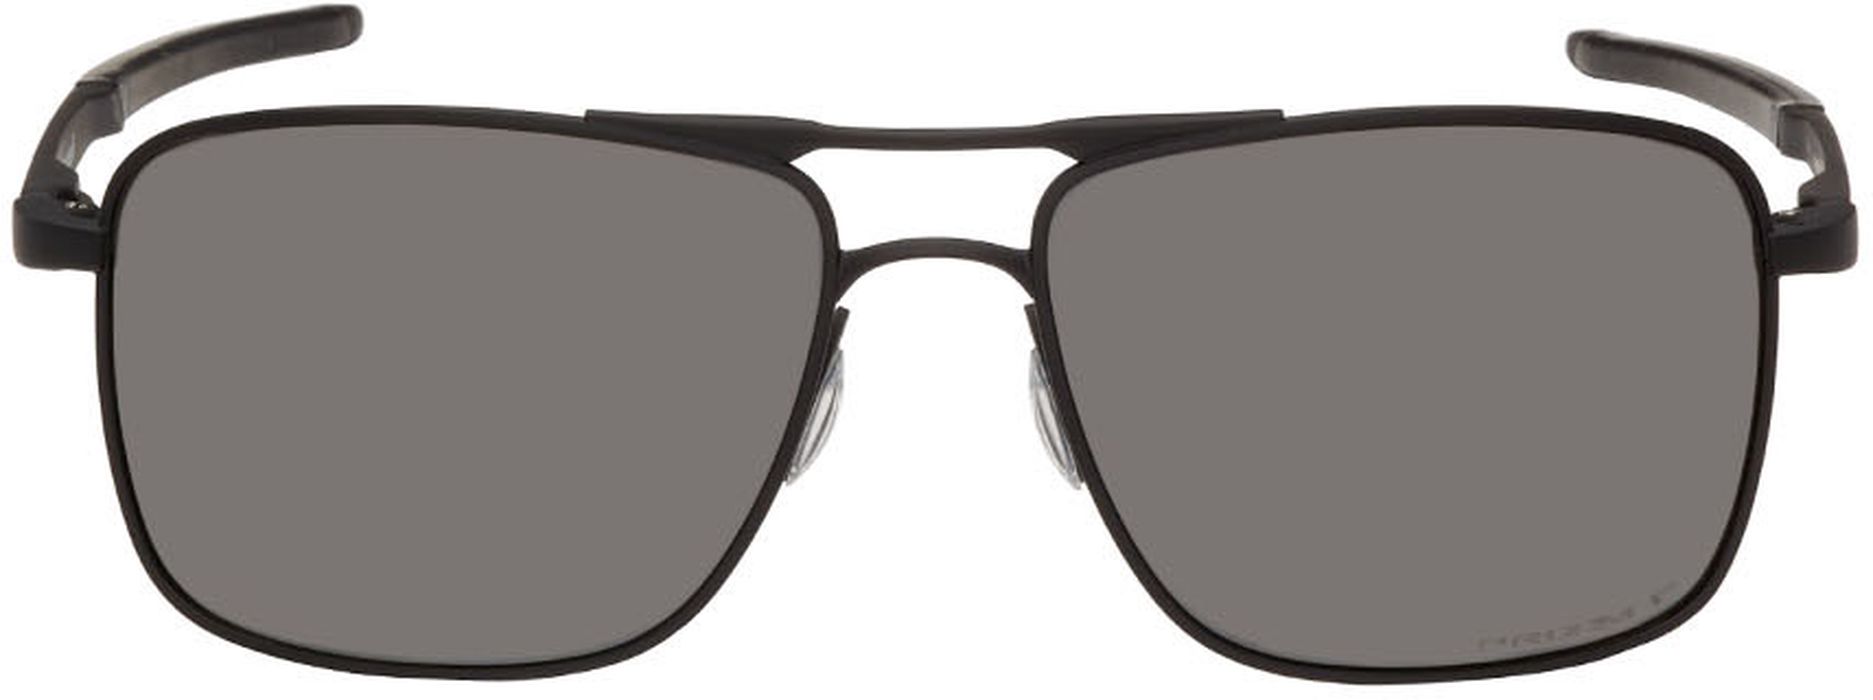 Oakley Black Gauge 6 Sunglasses